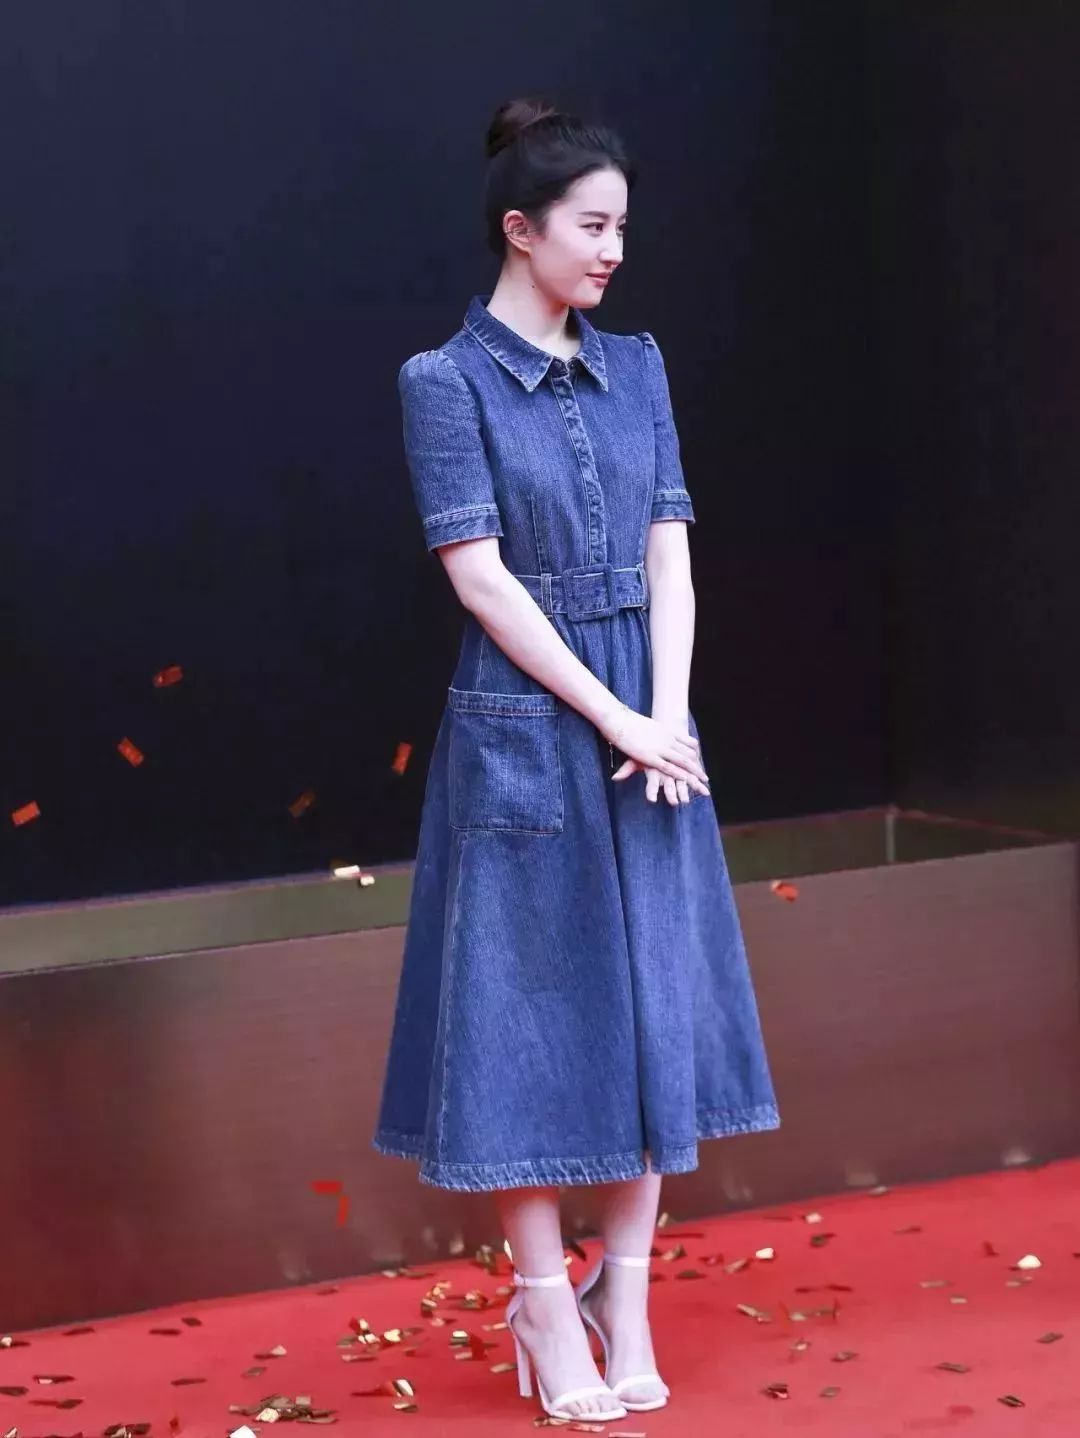 郑秀妍参加巴黎高定时装周的时候,也选择了一条牛仔连衣裙,搭配小白鞋